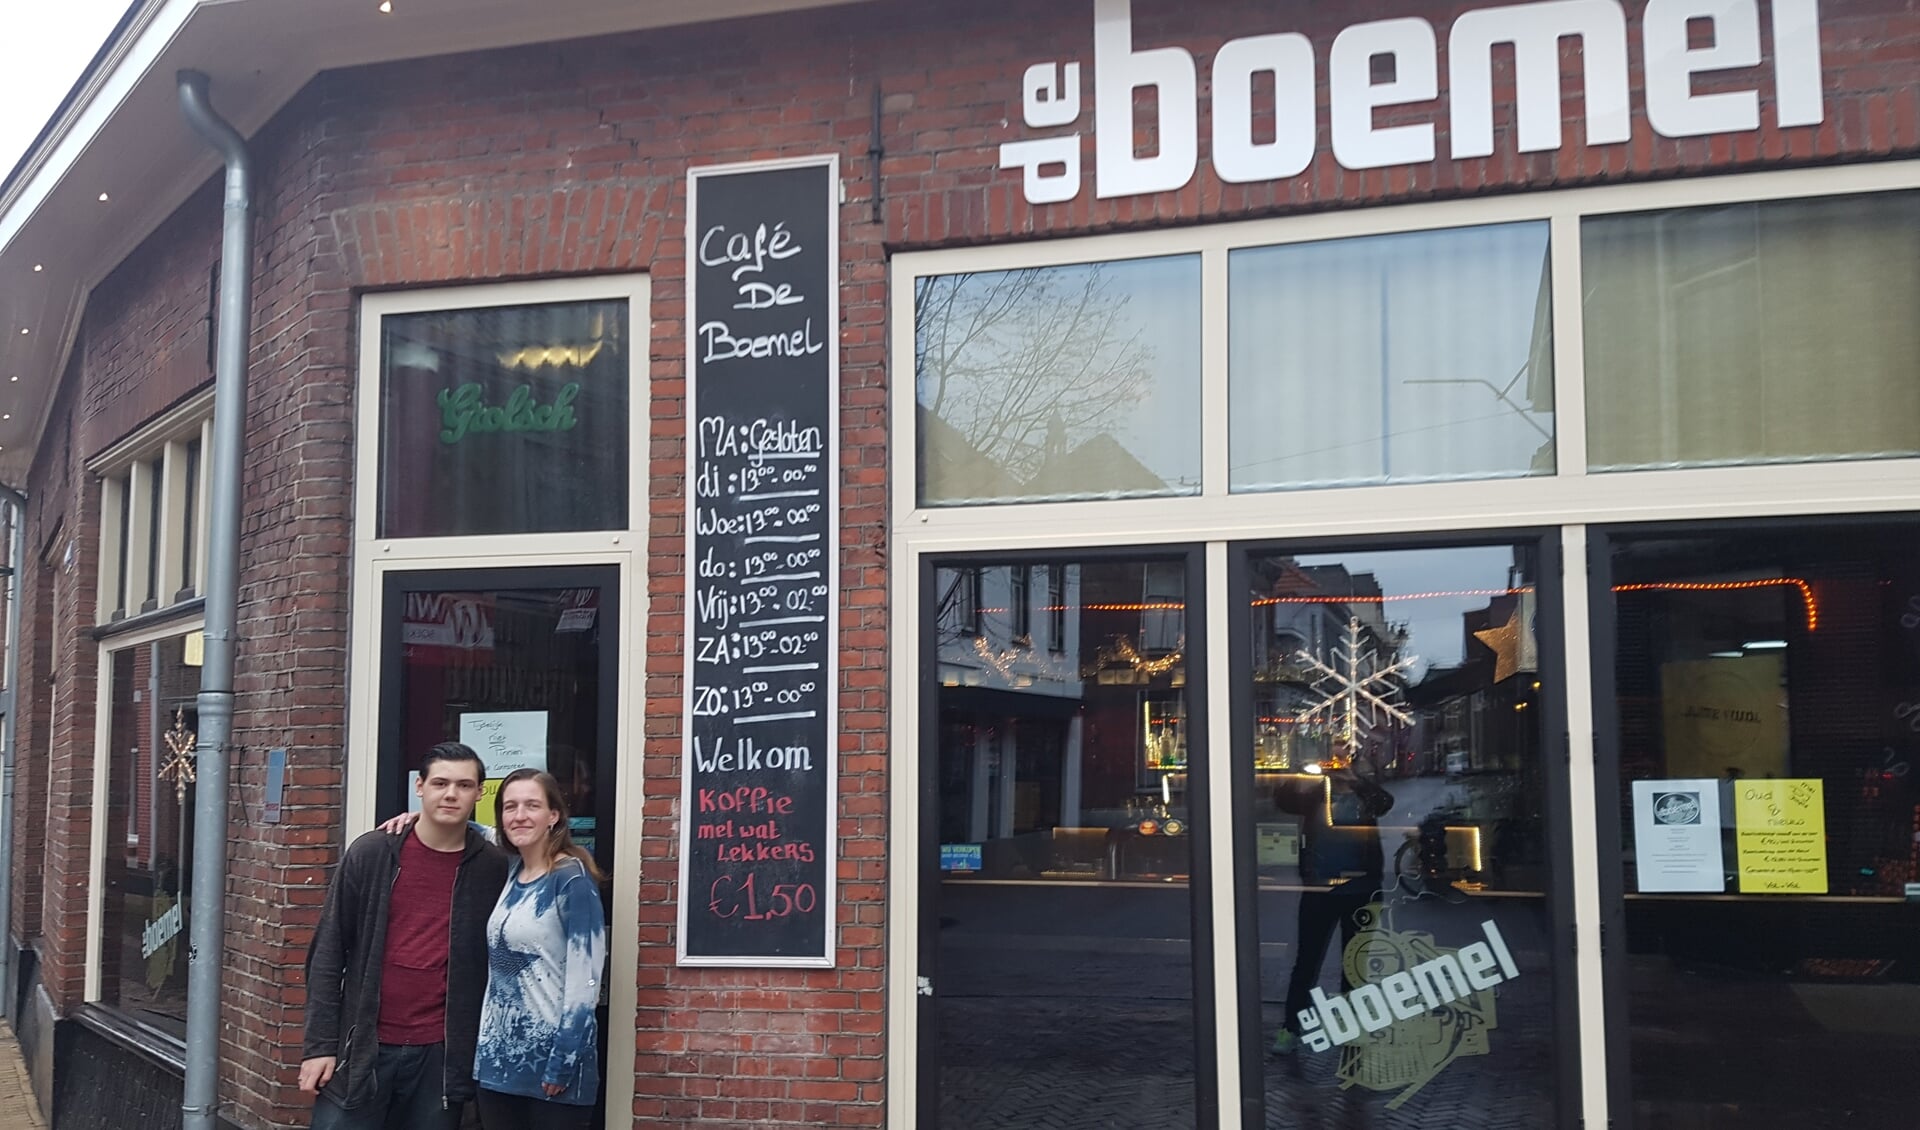 Uitbaatster Daniella van Druten samen met haar zoon Jeremy voor café De Boemel in Groenlo. Foto: Kyra Broshuis